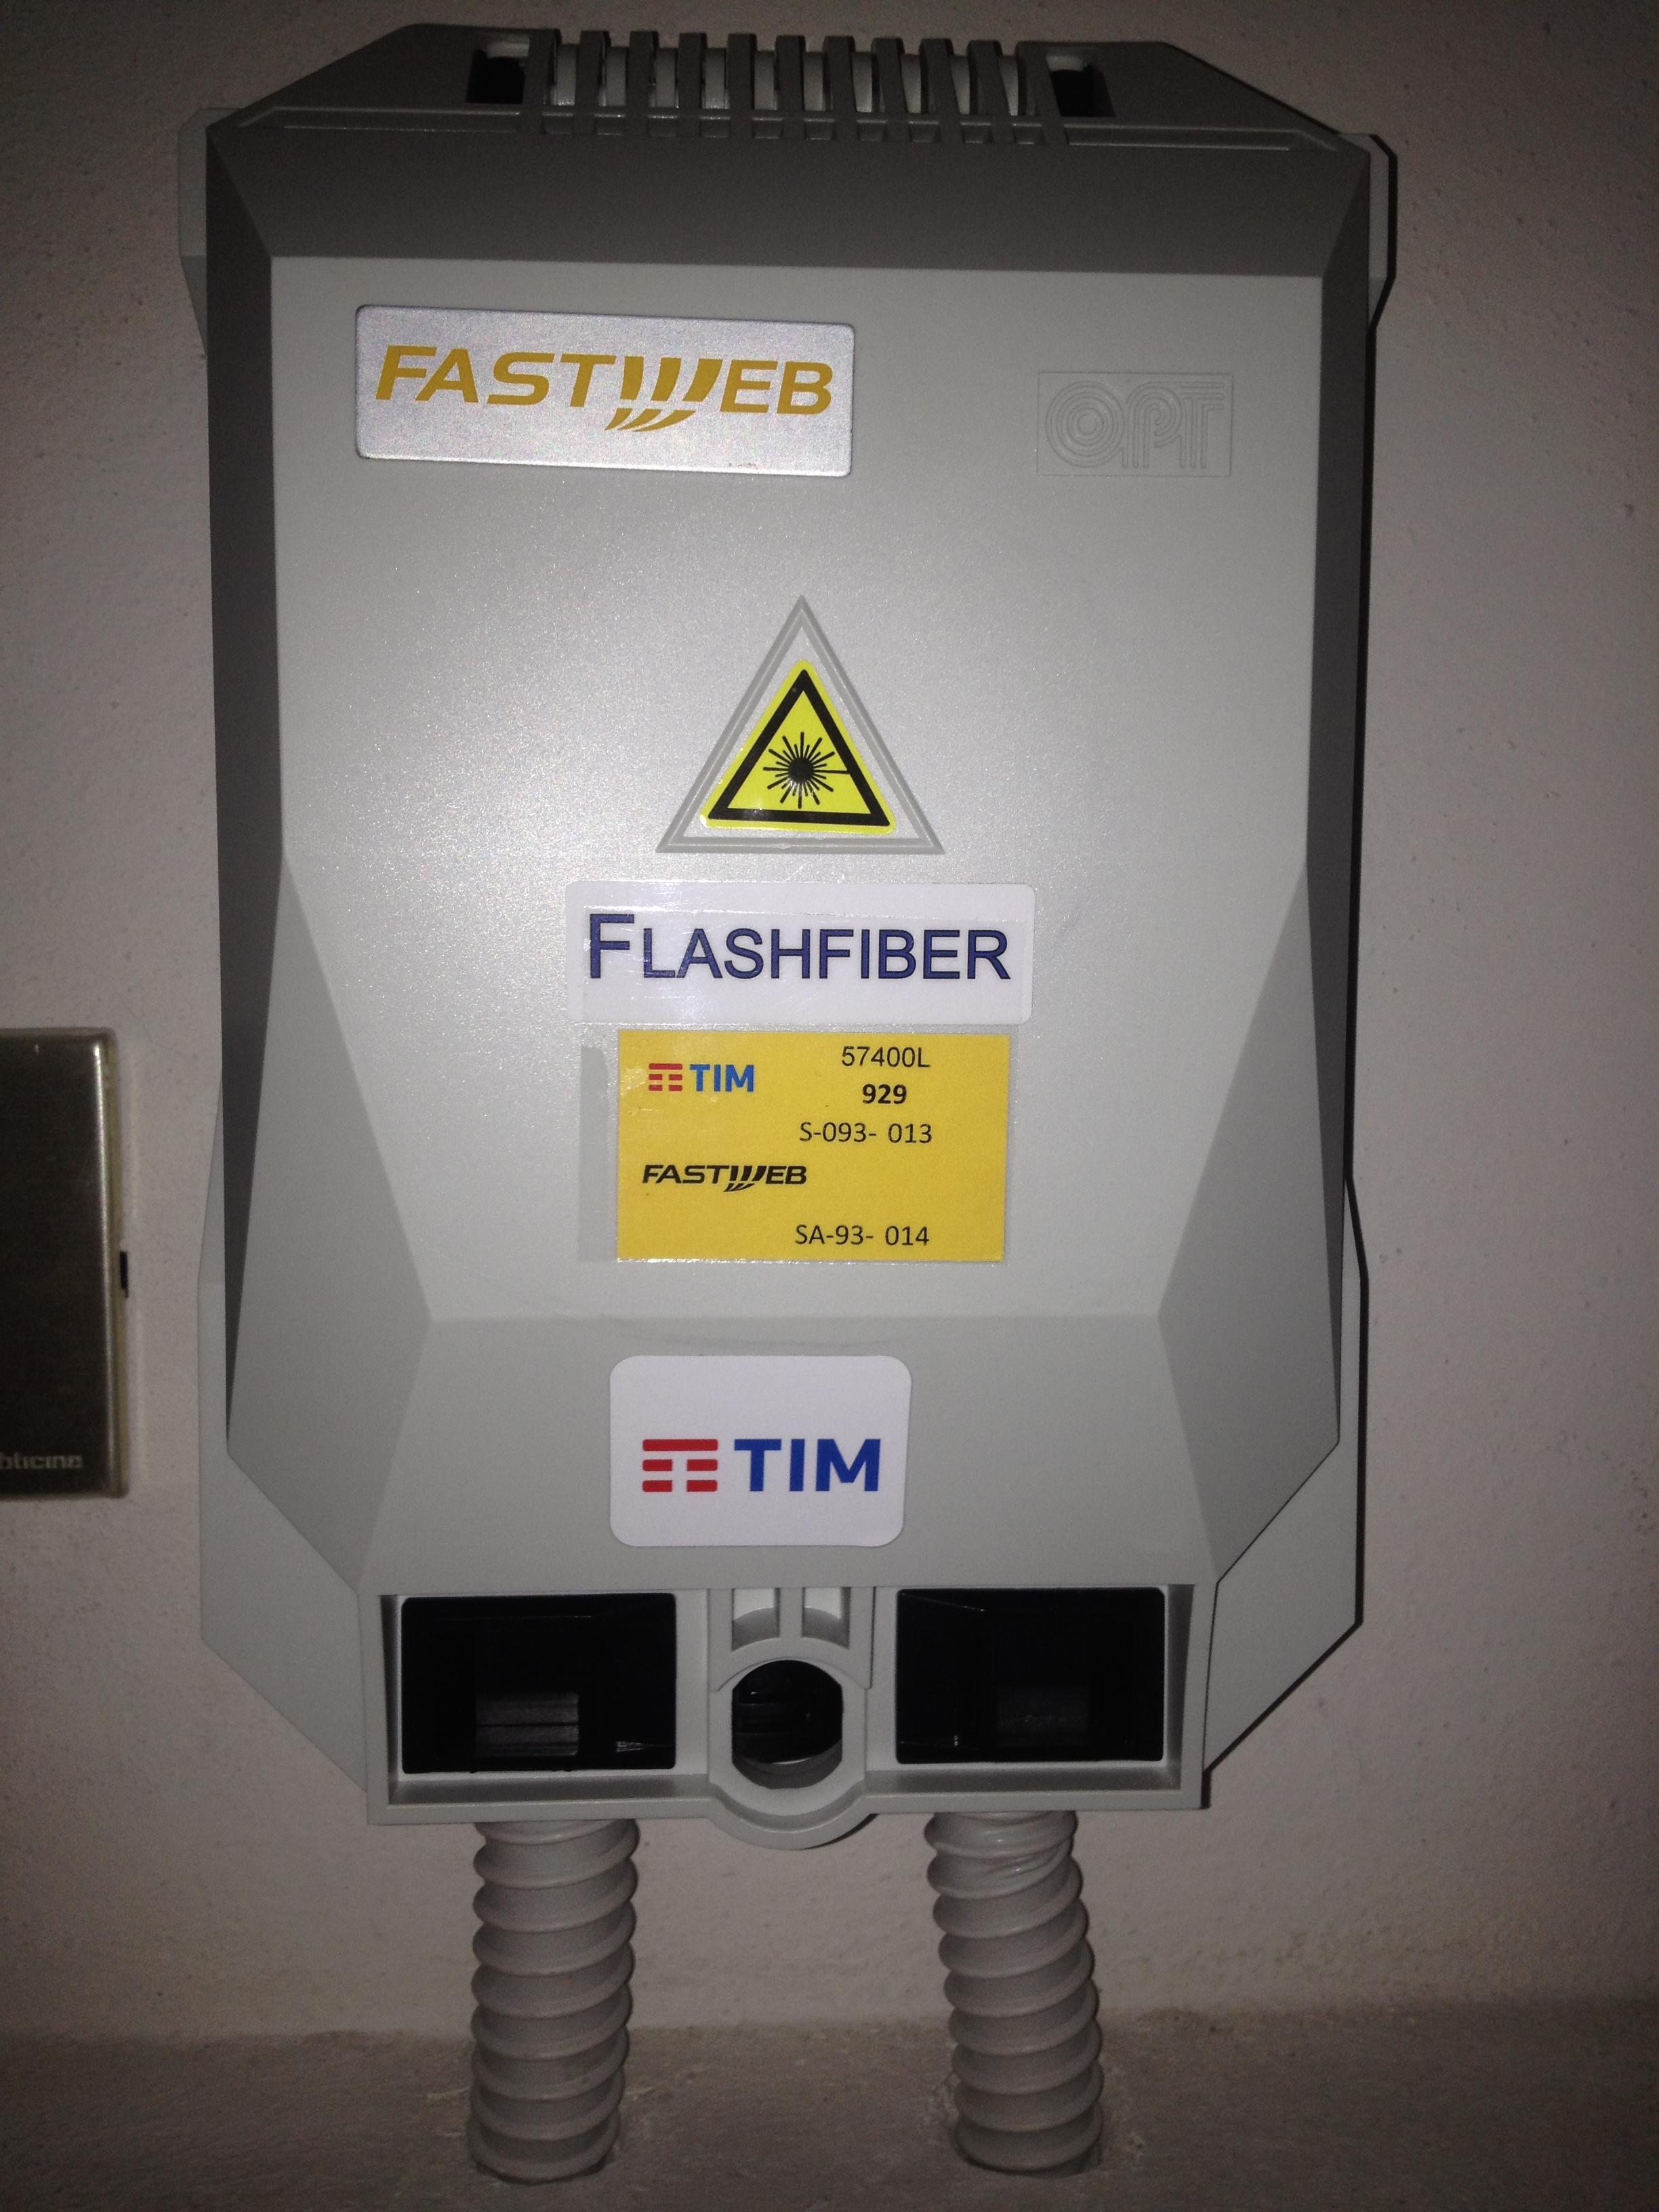 Scatola di un ROE con le etichette Flash Fiber, TIM e Fastweb